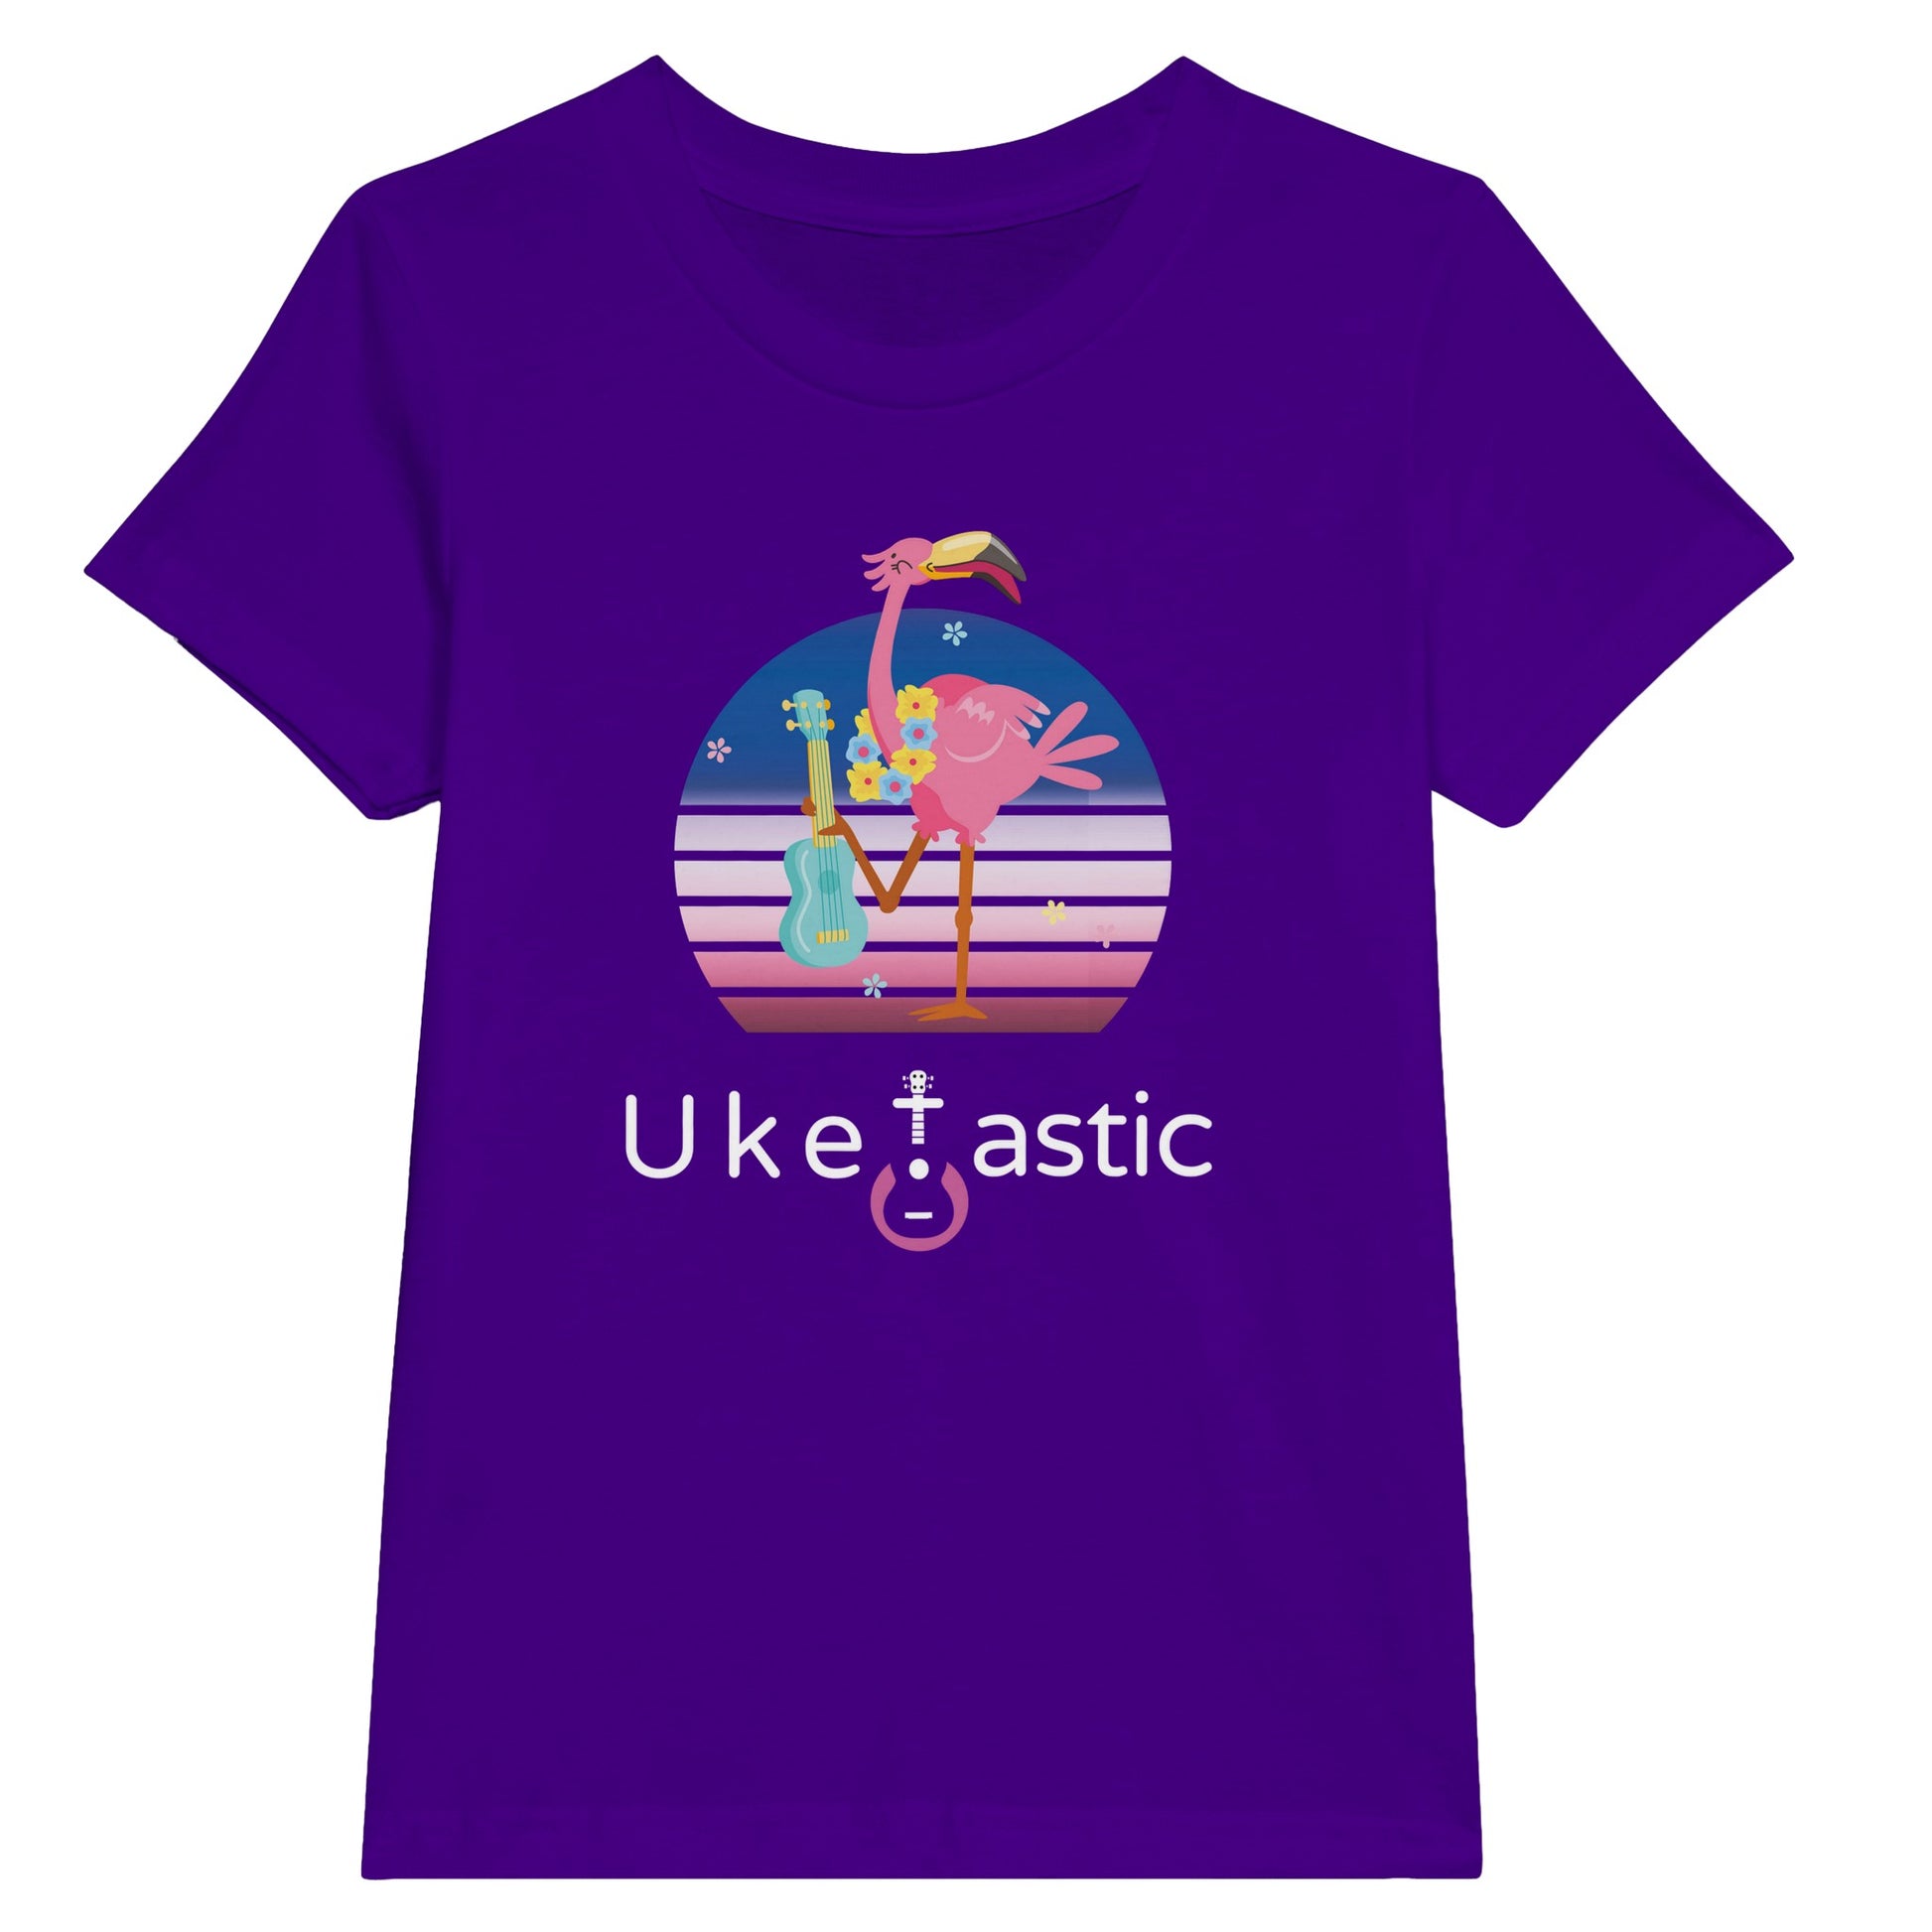 Kids ukulele t-shirt flamingo design purple